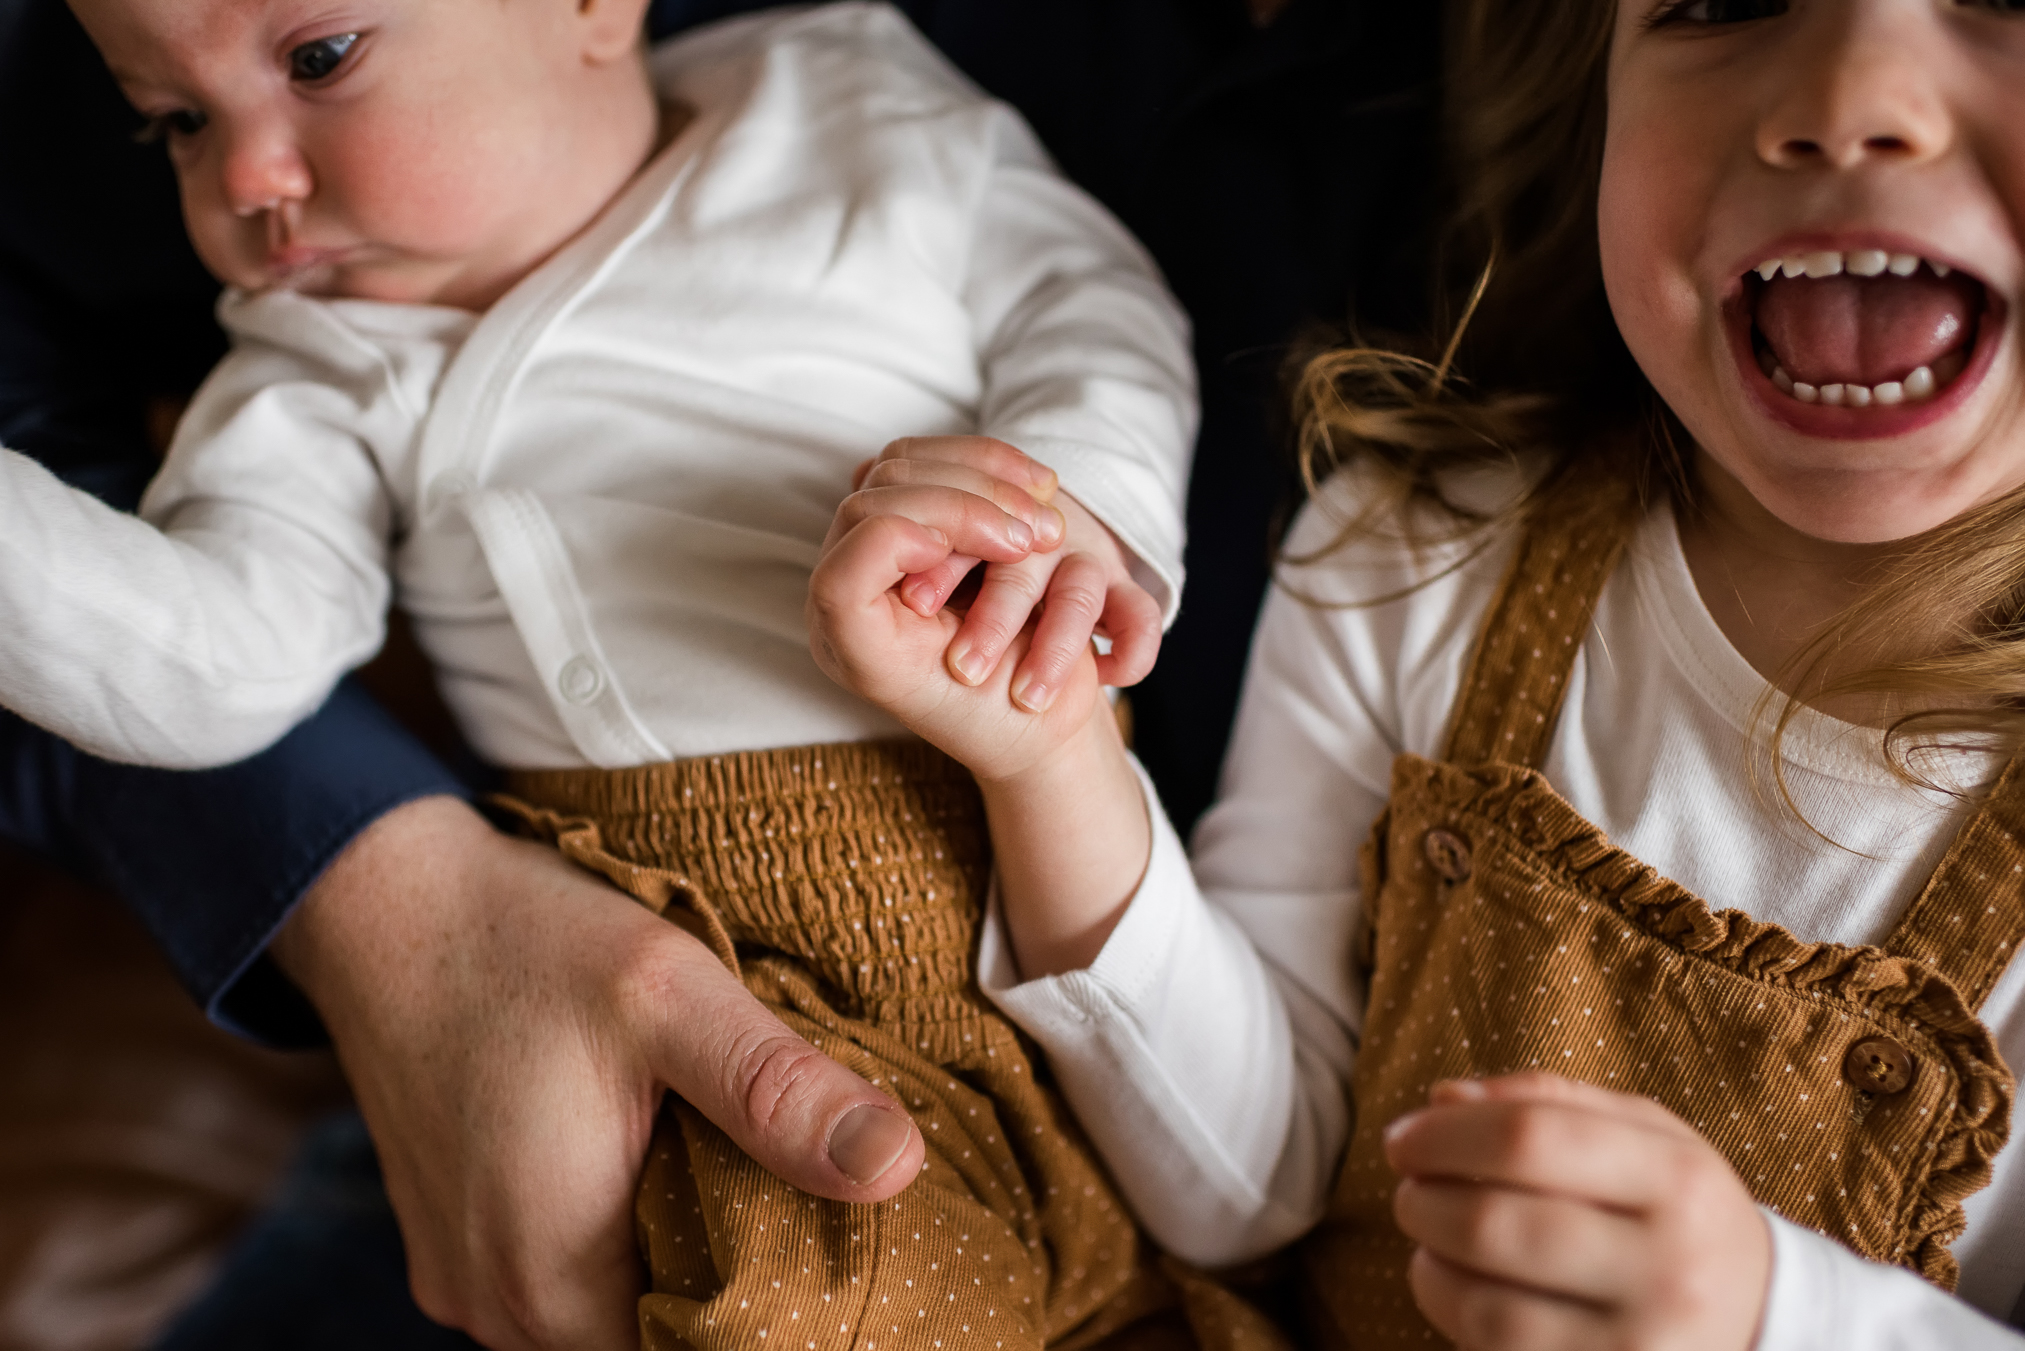 Newborn-Shooting mit großer Schwester zu Hause, Foto von ihrer Hand, die das Baby hält